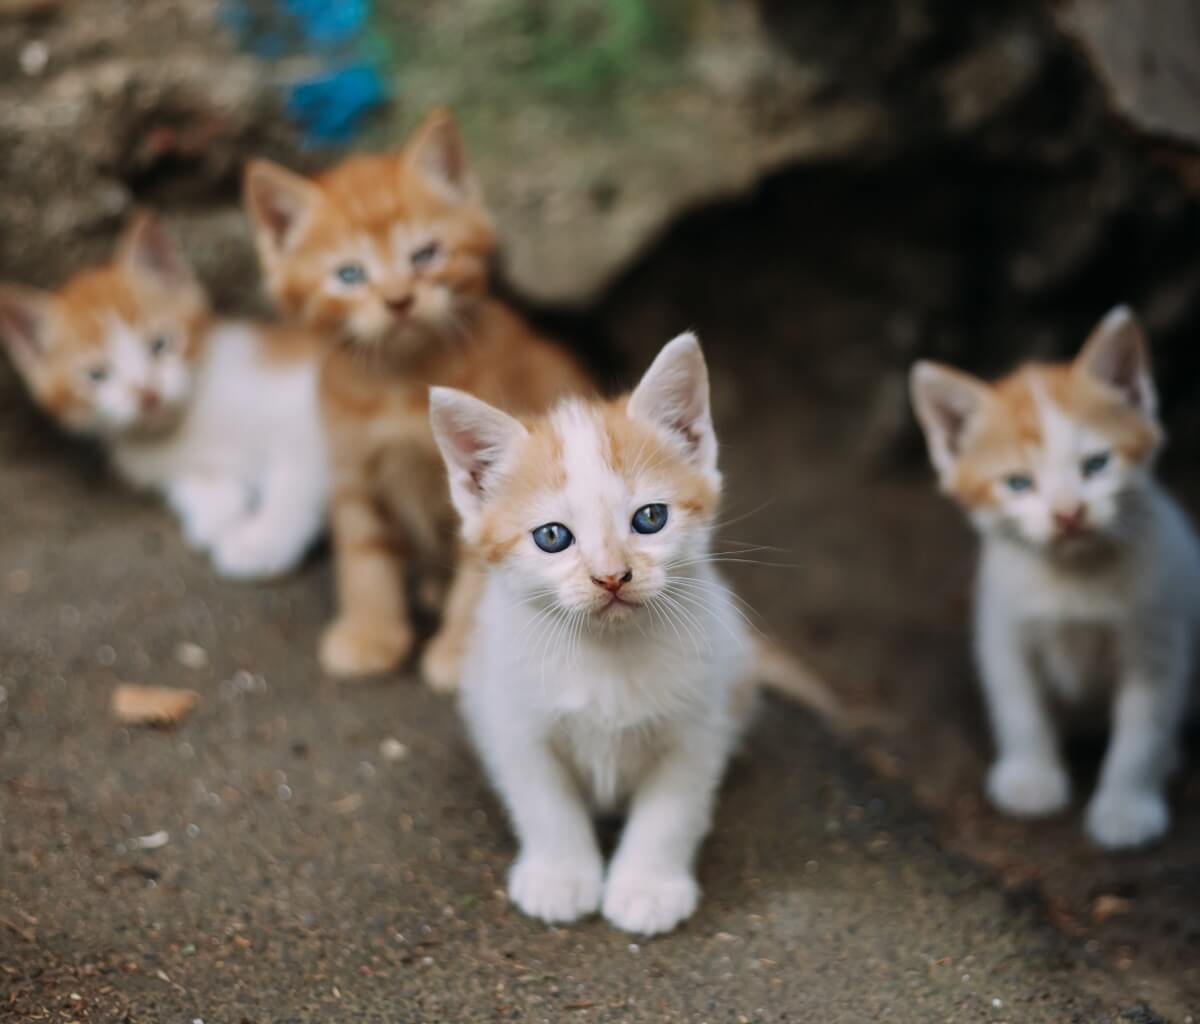 Krankheiten von streunenden Katzen: Welche sind die häufigsten?